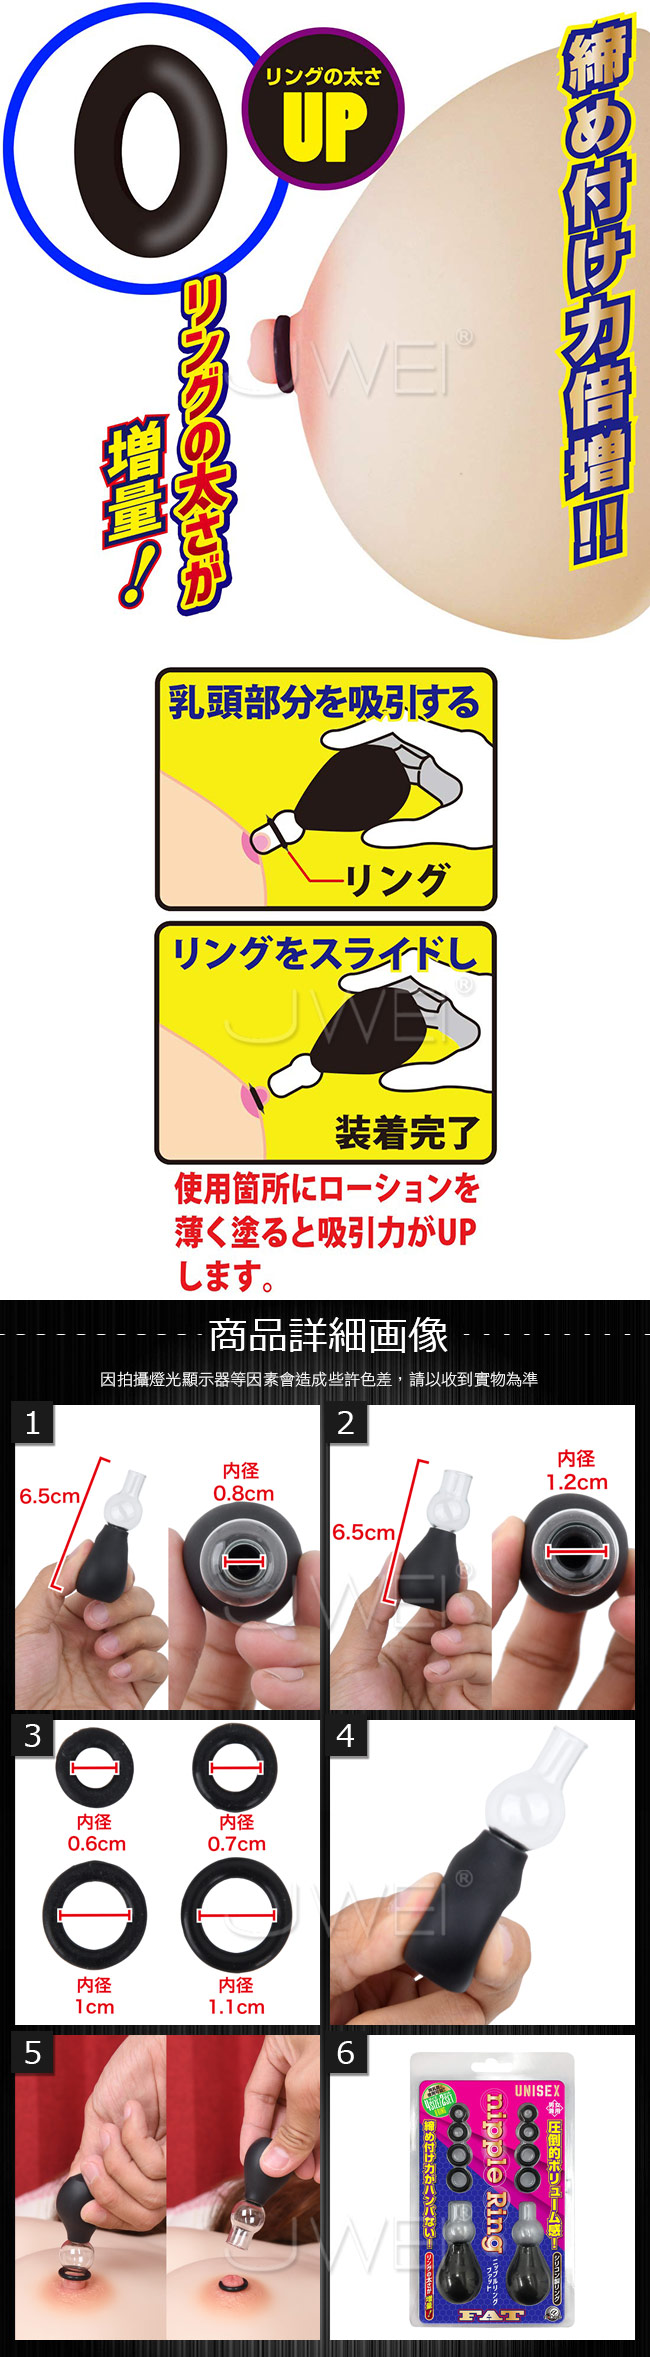 日本原裝進口A-ONE．Nipple Ring FAT 男女通用 吸乳刺激勃起乳頭環